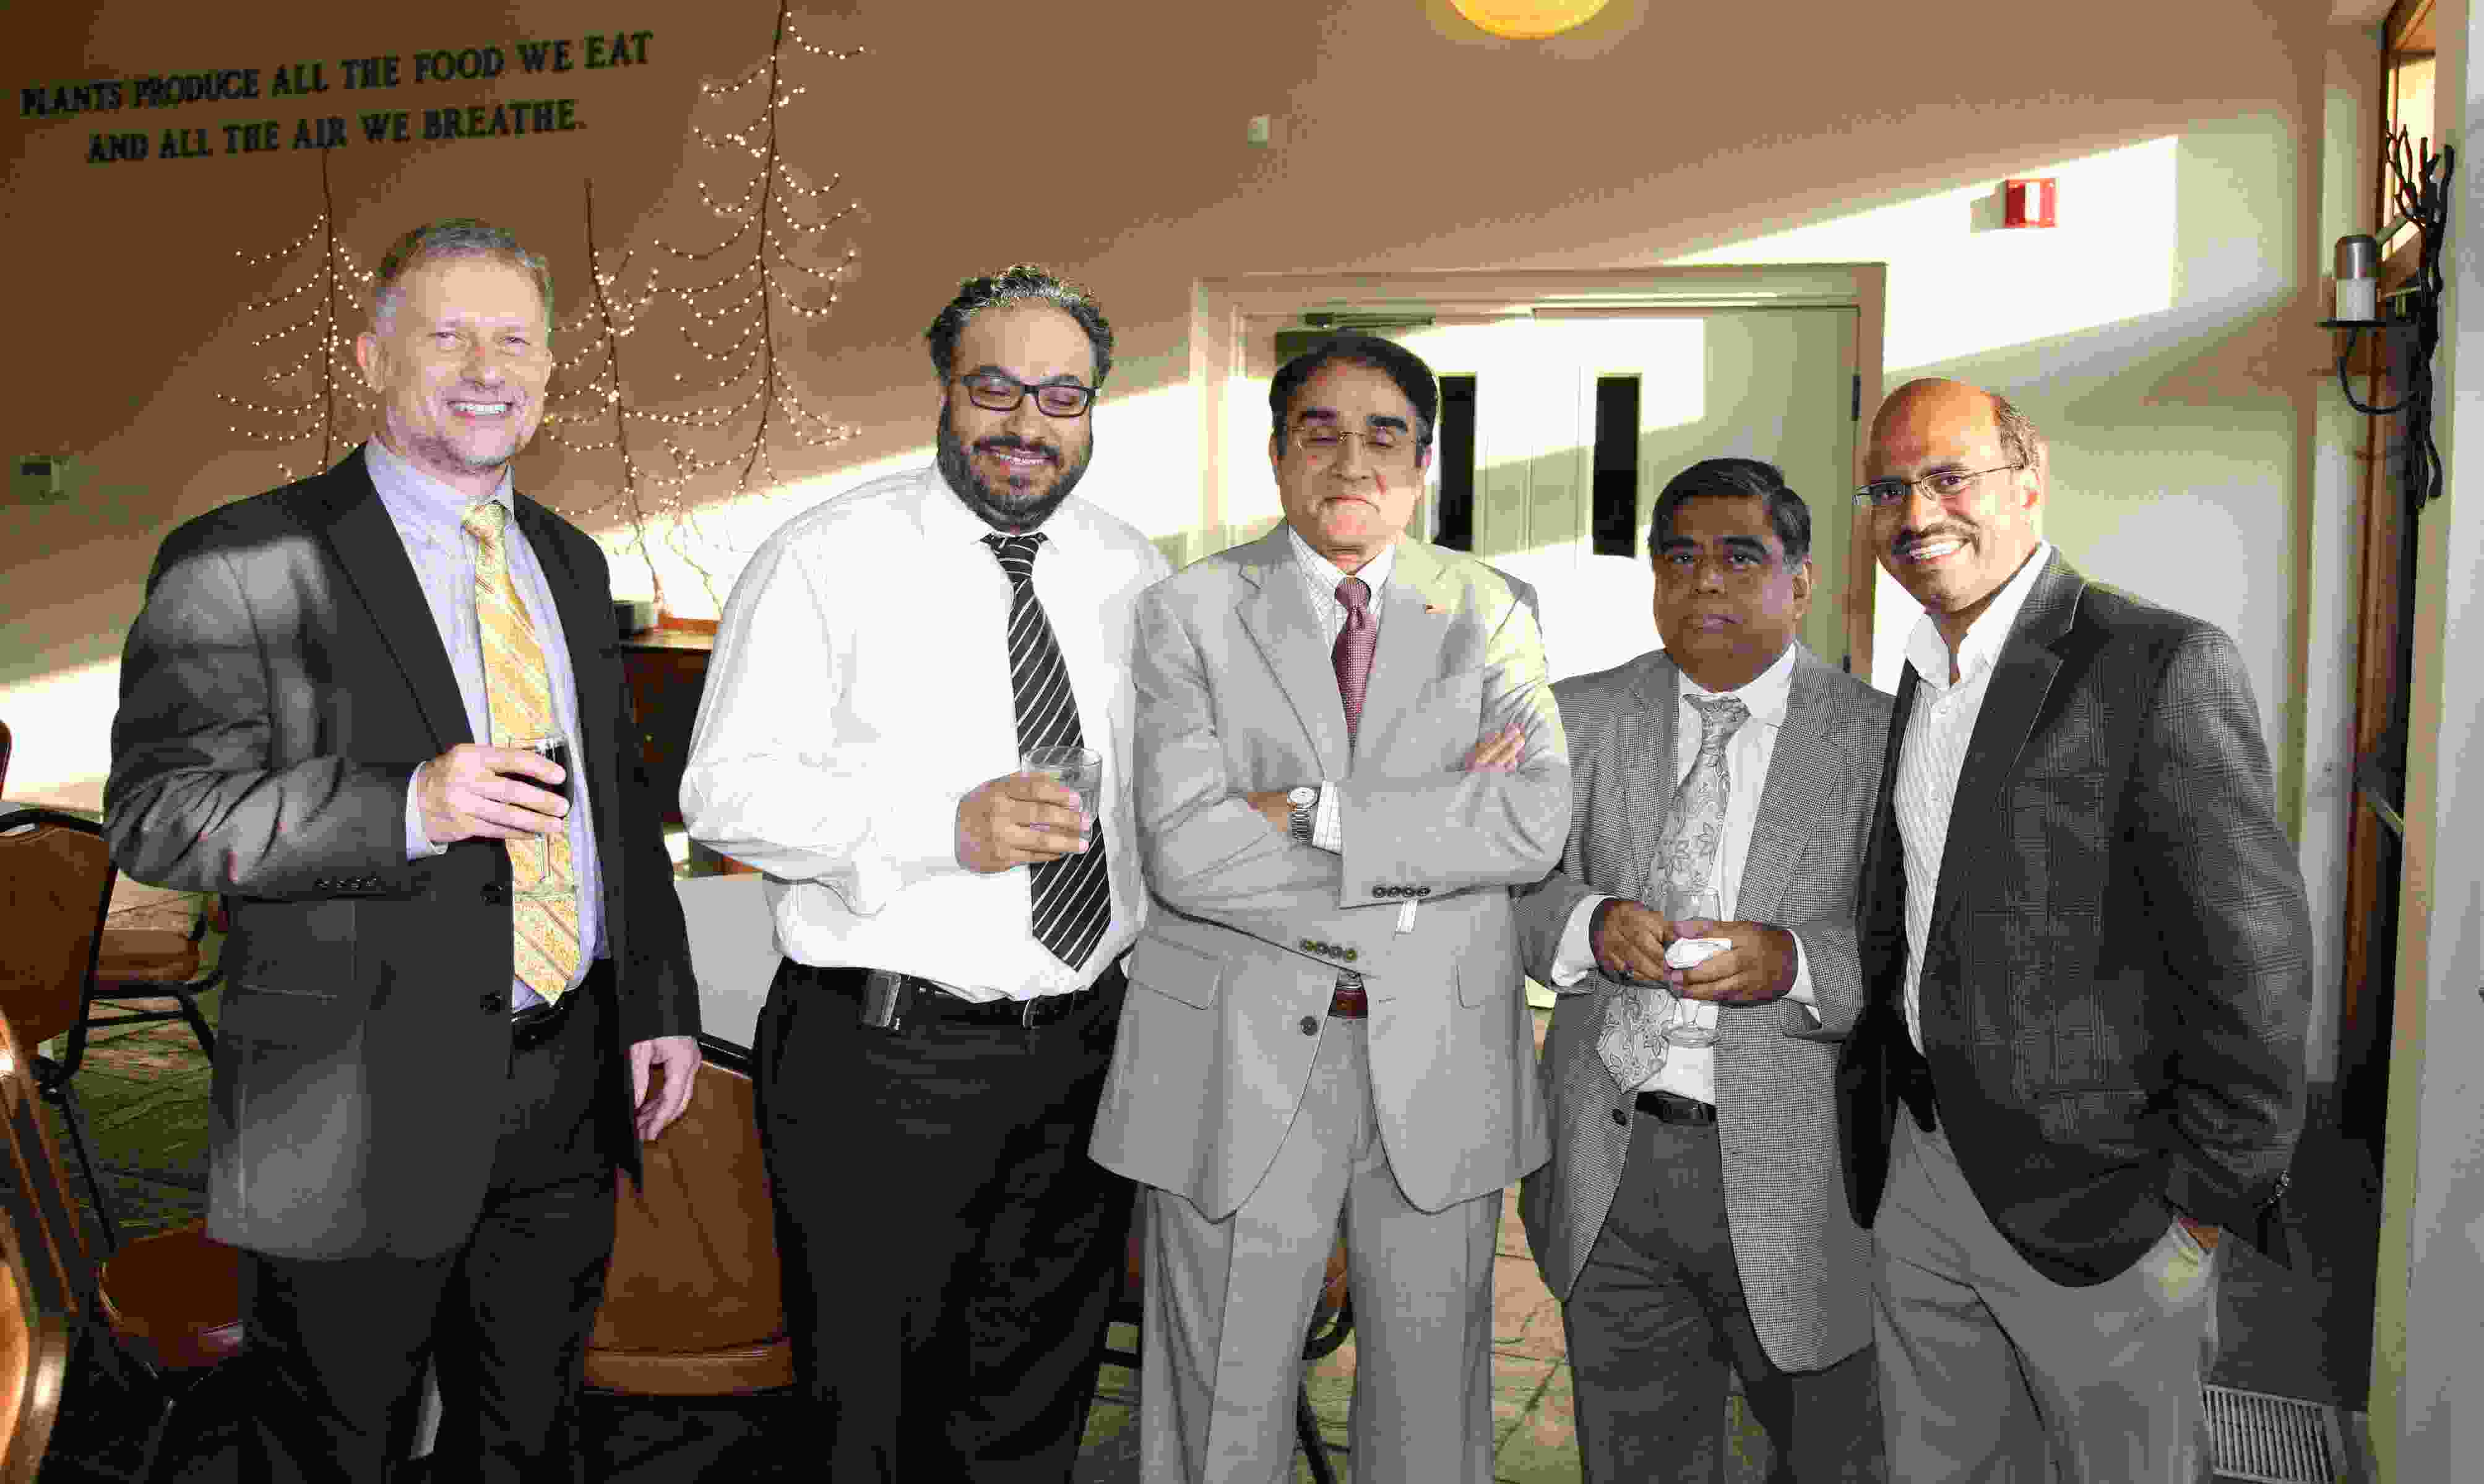 Drs. Alexi Bogdanov, Ajit Puri, Krishna Kandarpa, Abhijit Roychowdhury, & Sathish Dundamadappa